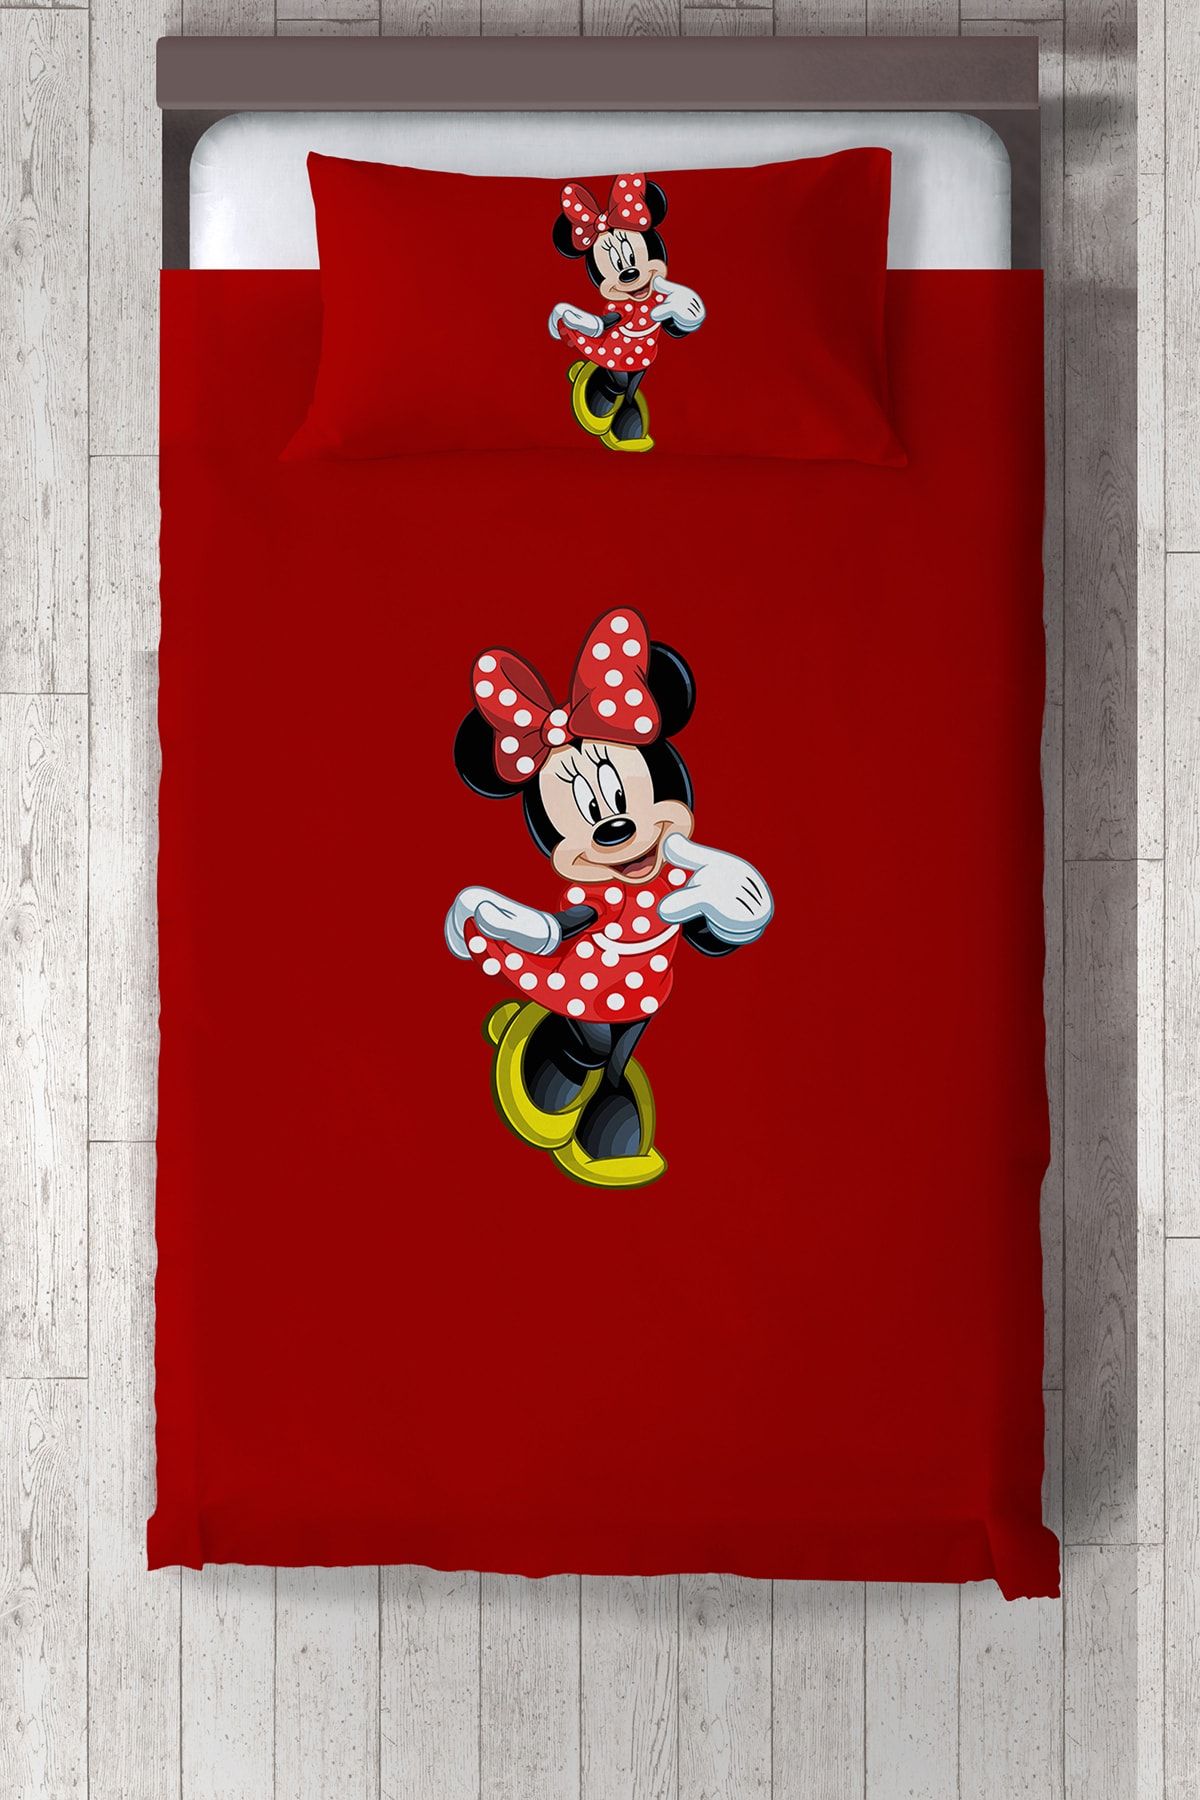 Talia Home Çocuk Odası Bebek Odası Mickey Mausee Yatak Örtüsü